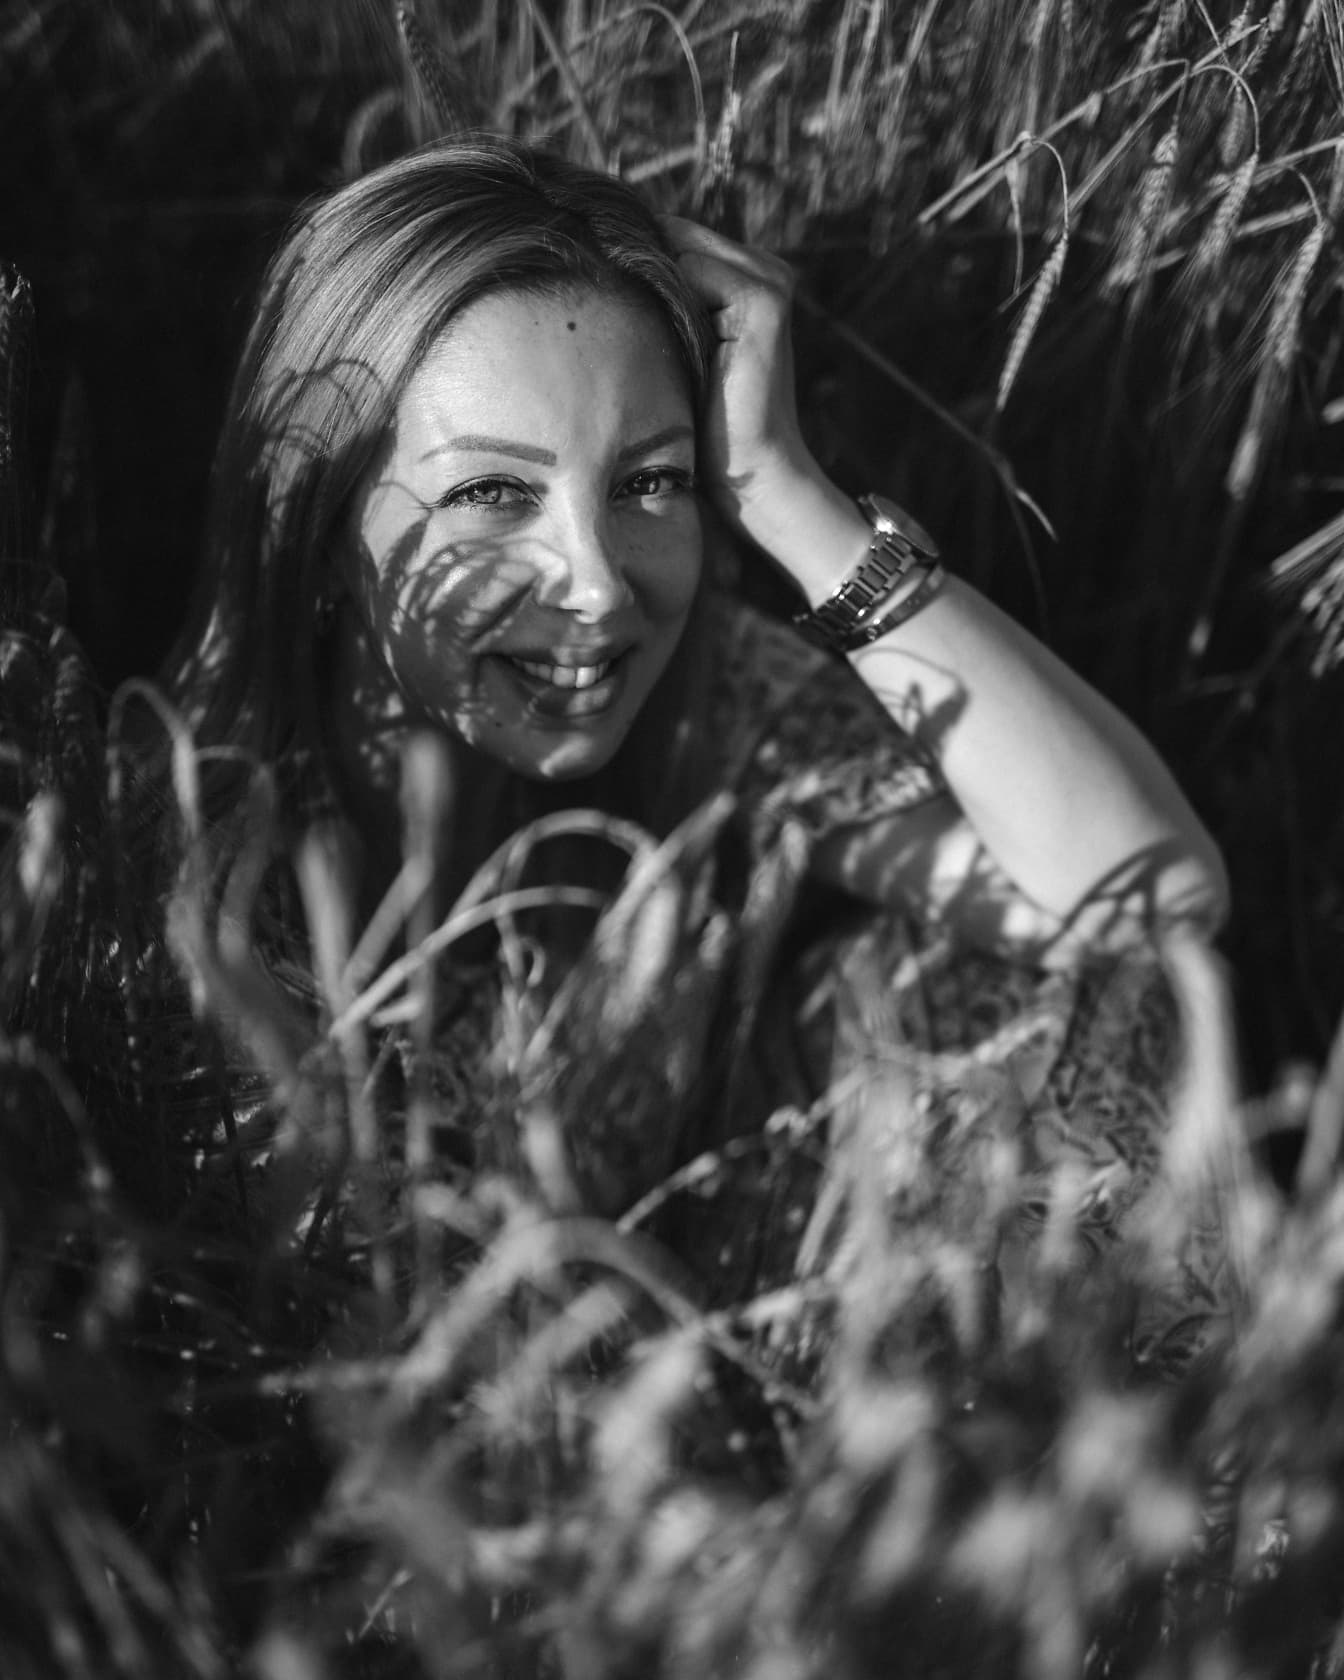 Gråtoneportrettfotografisk kvinne som sitter i hveteåker